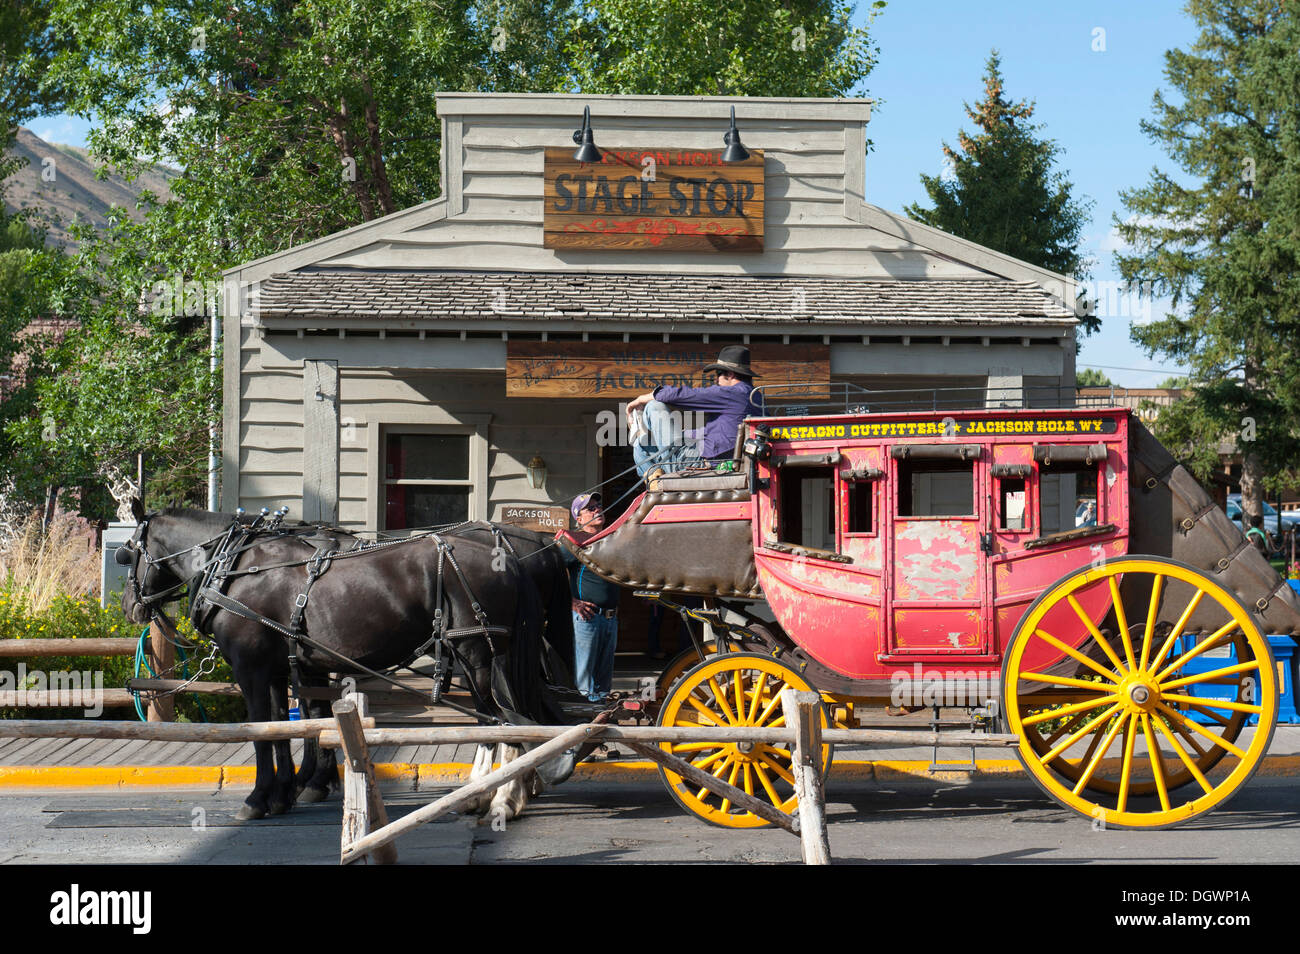 Zwei Pferde und Kutscher auf eine alte Postkutsche, Jackson Hole, Wyoming, Westen der USA, USA, Vereinigte Staaten von Amerika Stockfoto